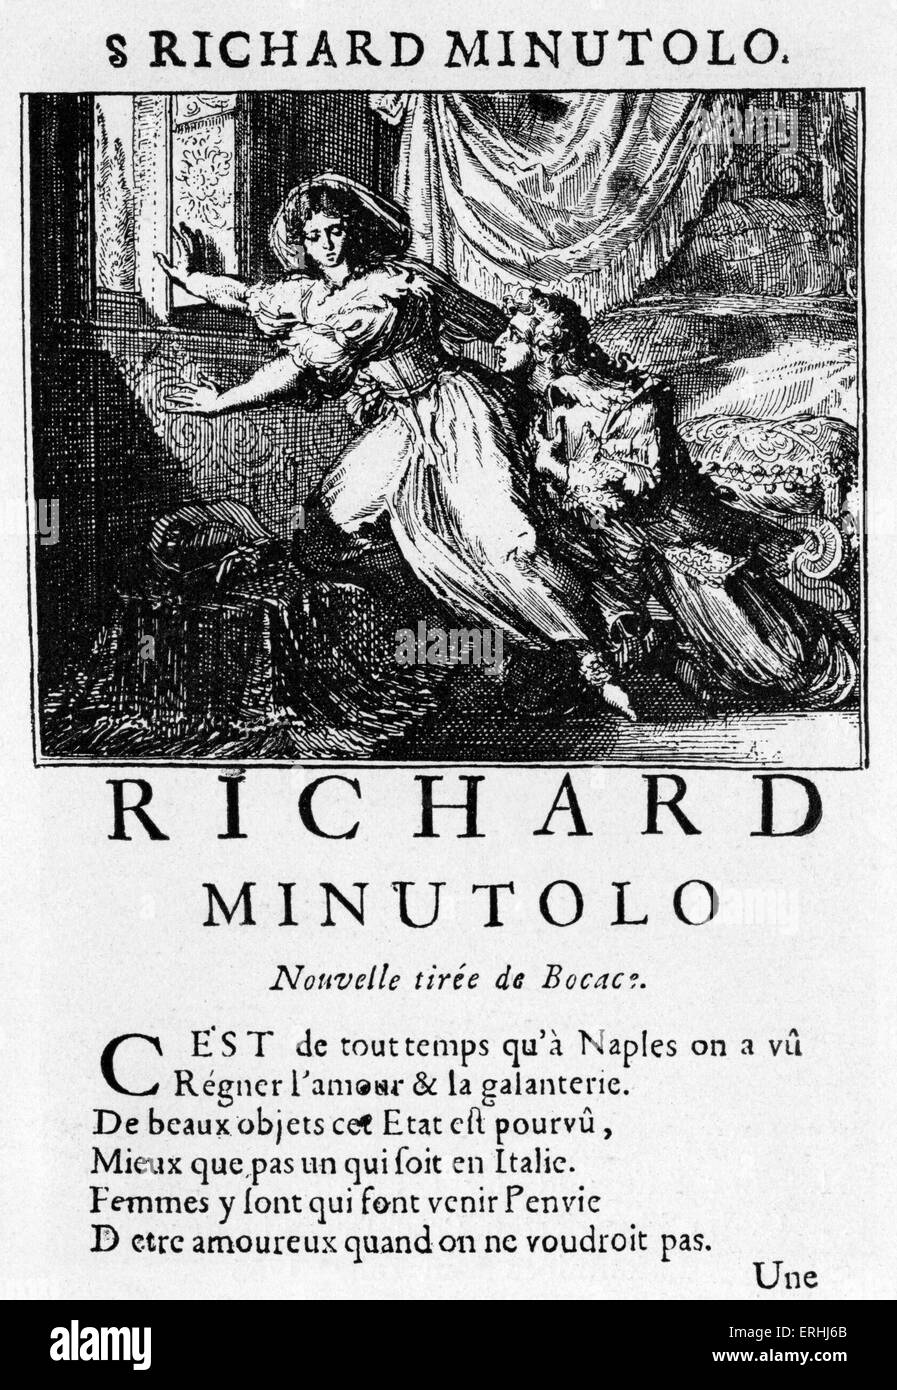 Jean de La Fontaine - page de titre de l'histoire du poète français 'Richard Minutolo'. À partir de l'édition d'Anvers 1685 de son 'Contes' Banque D'Images